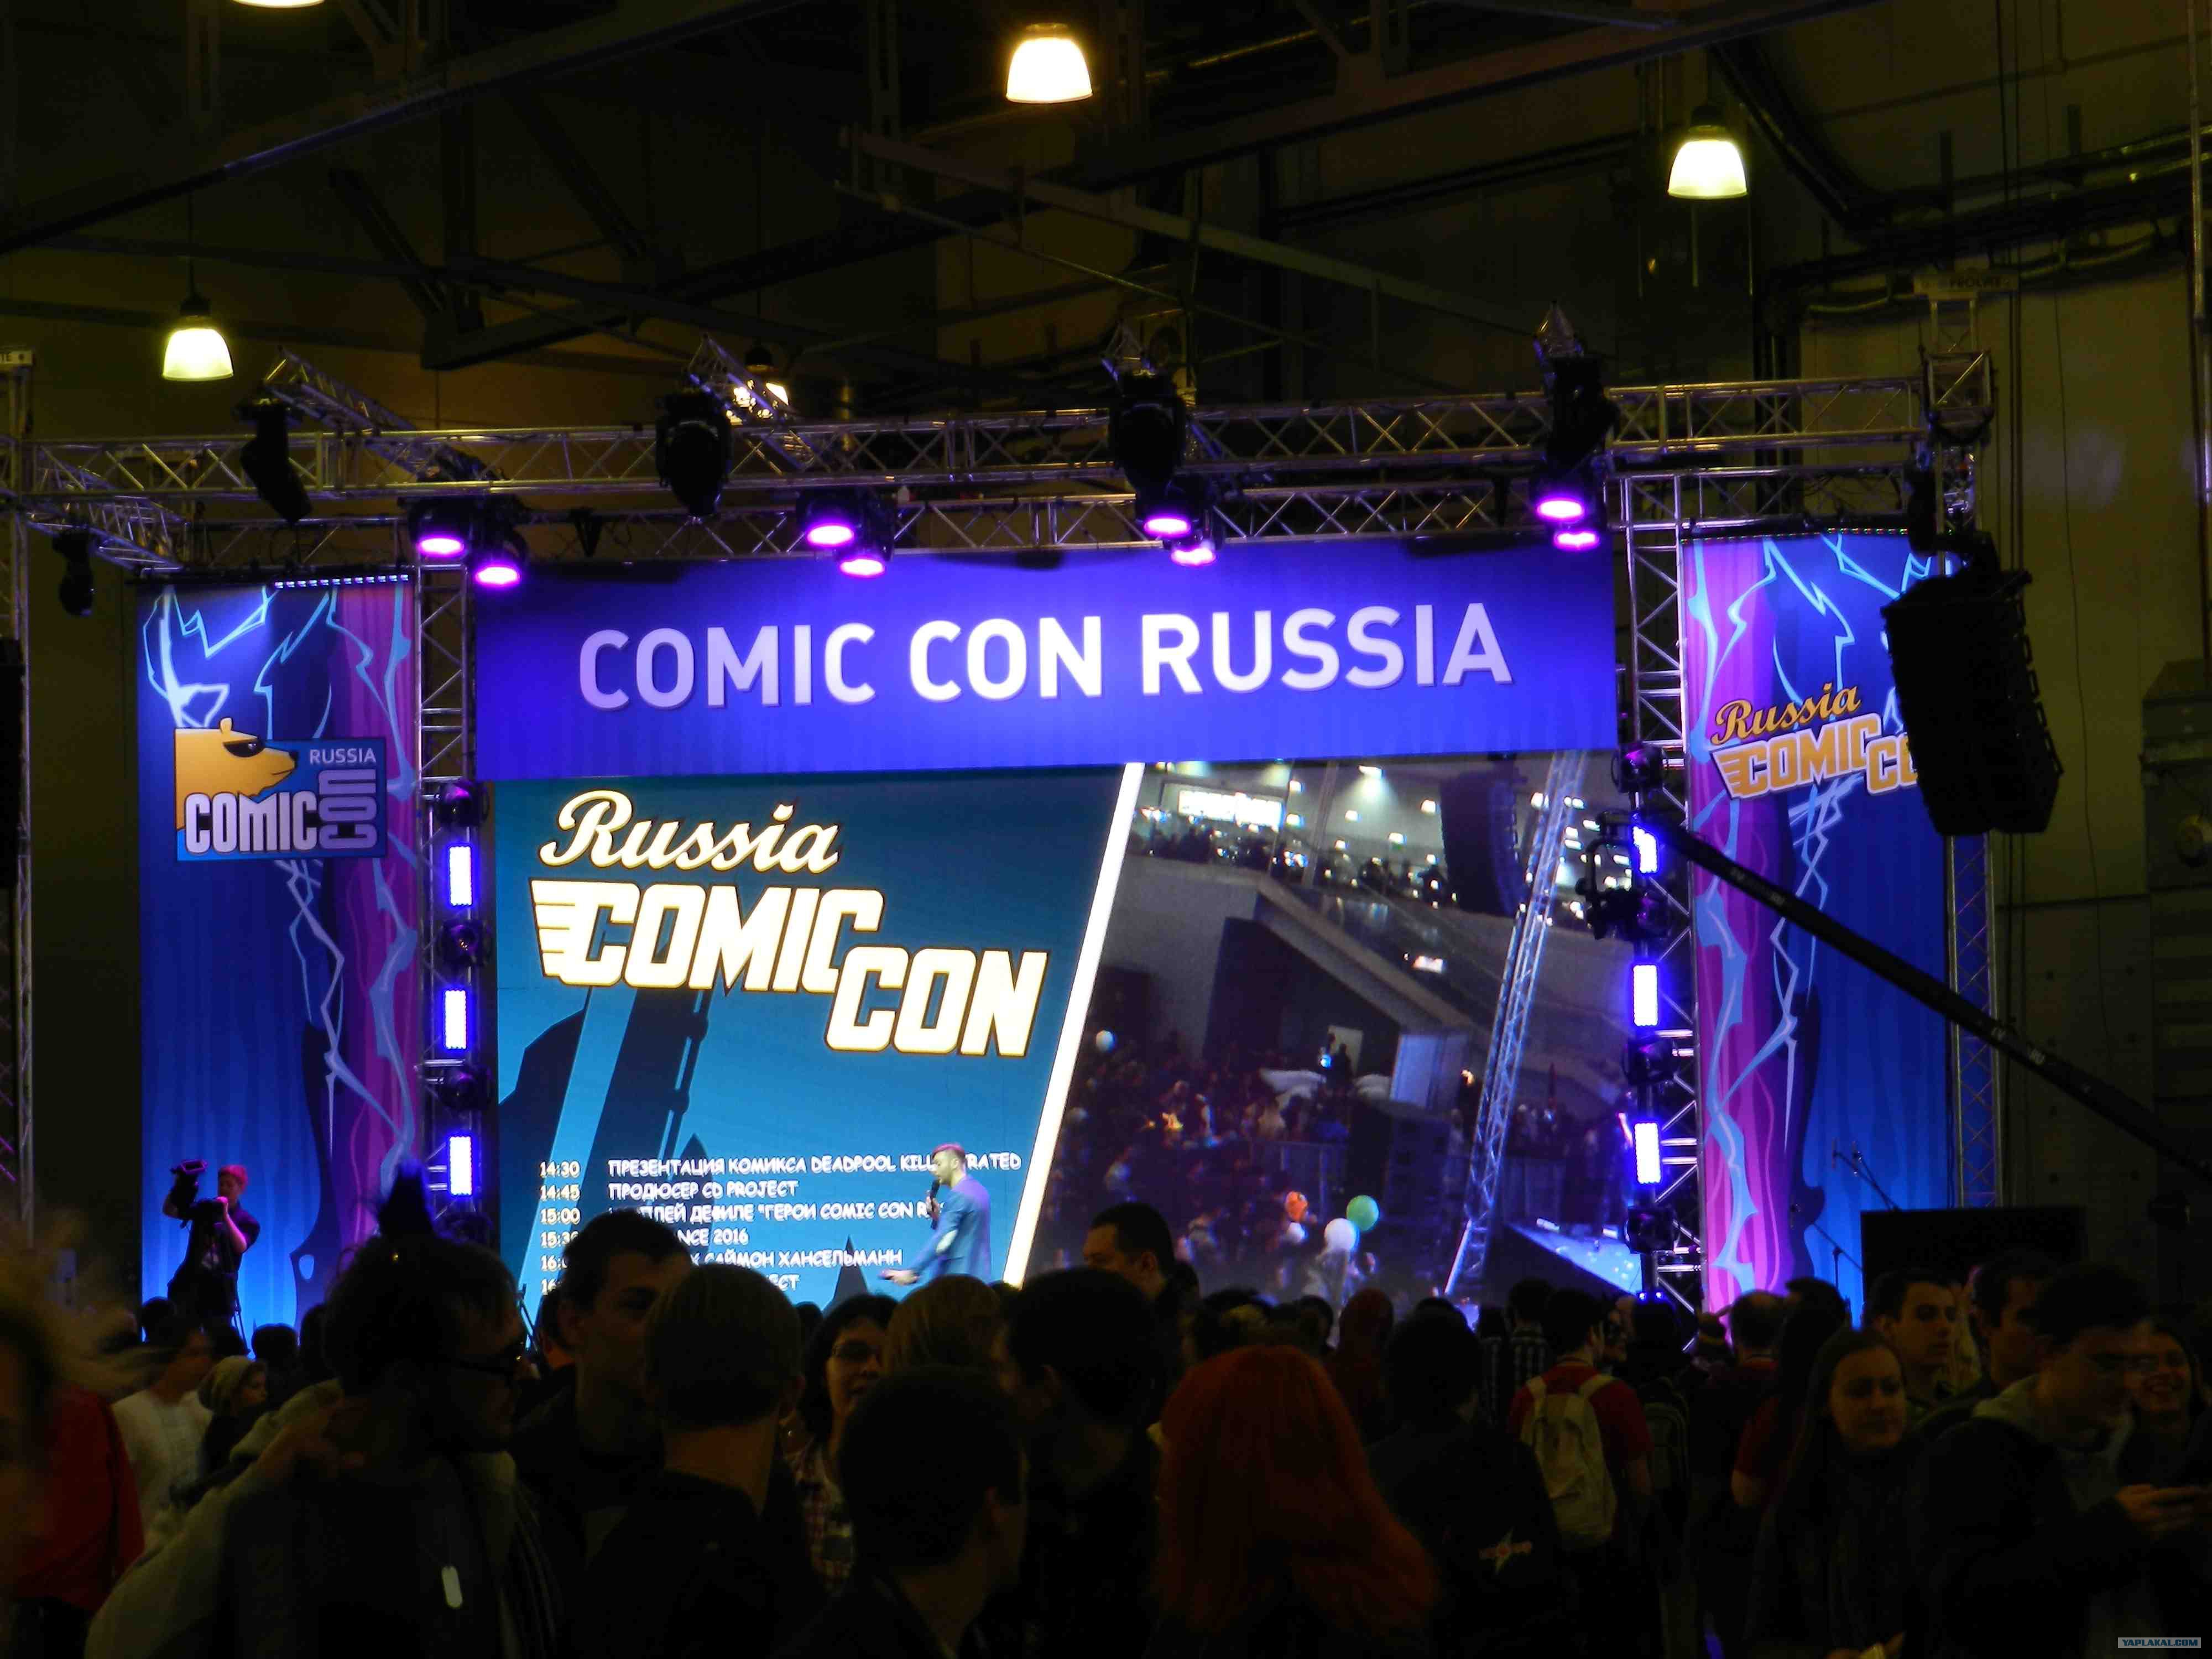  comic con russia 2015 